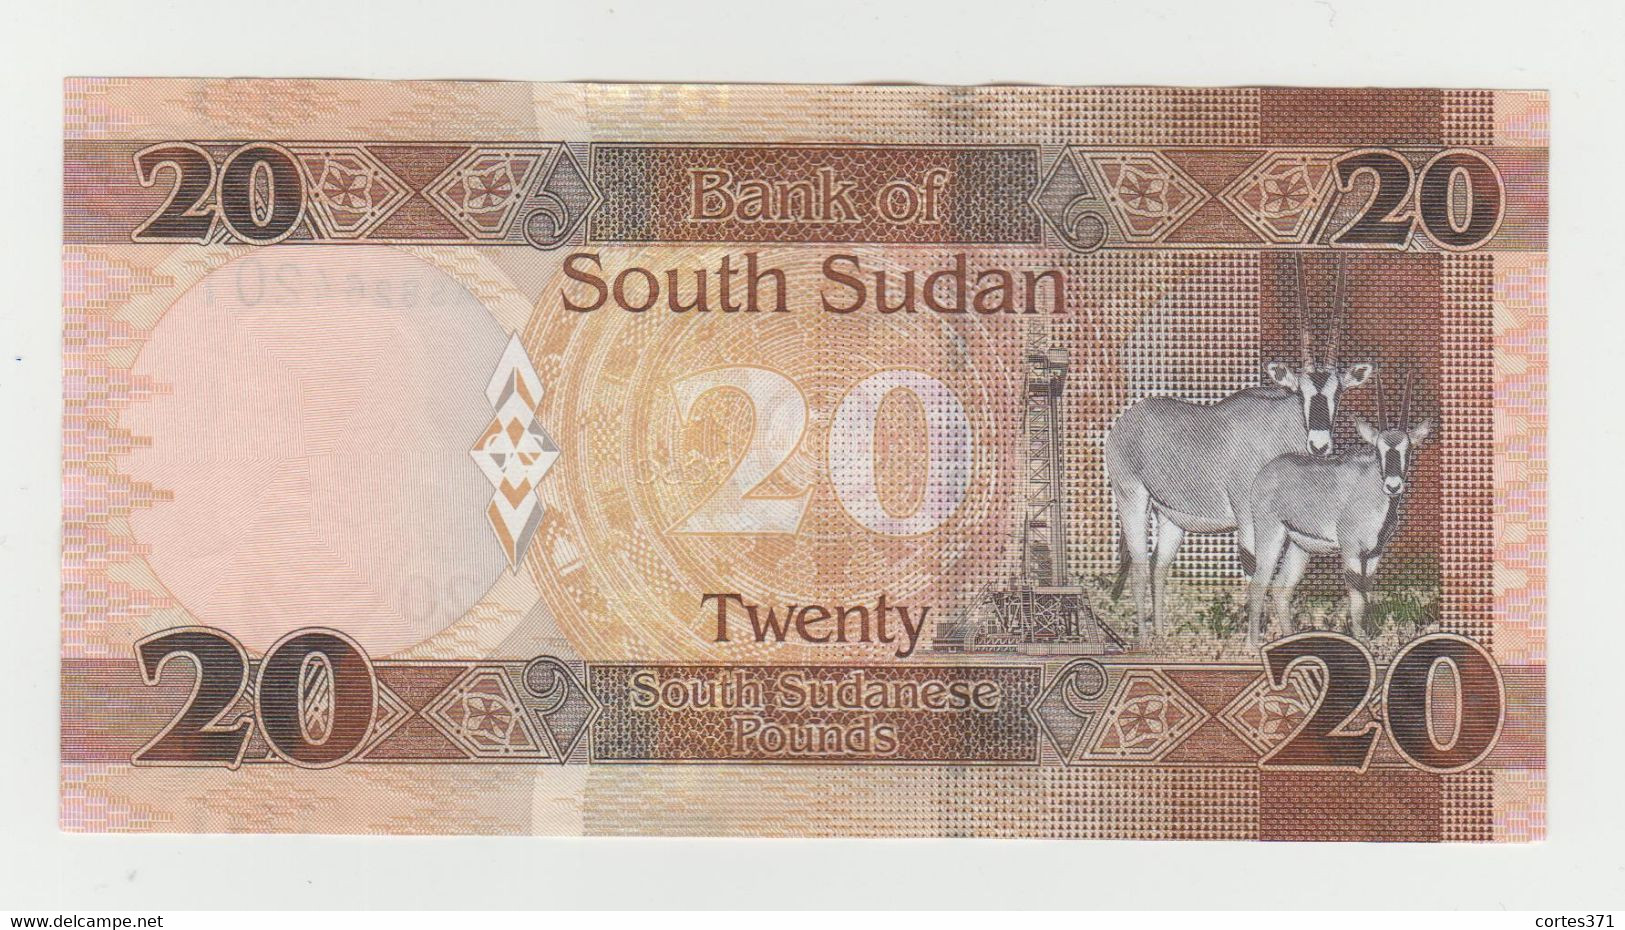 South Sudan 20 Pounds 2017 P-13c UNC - Südsudan